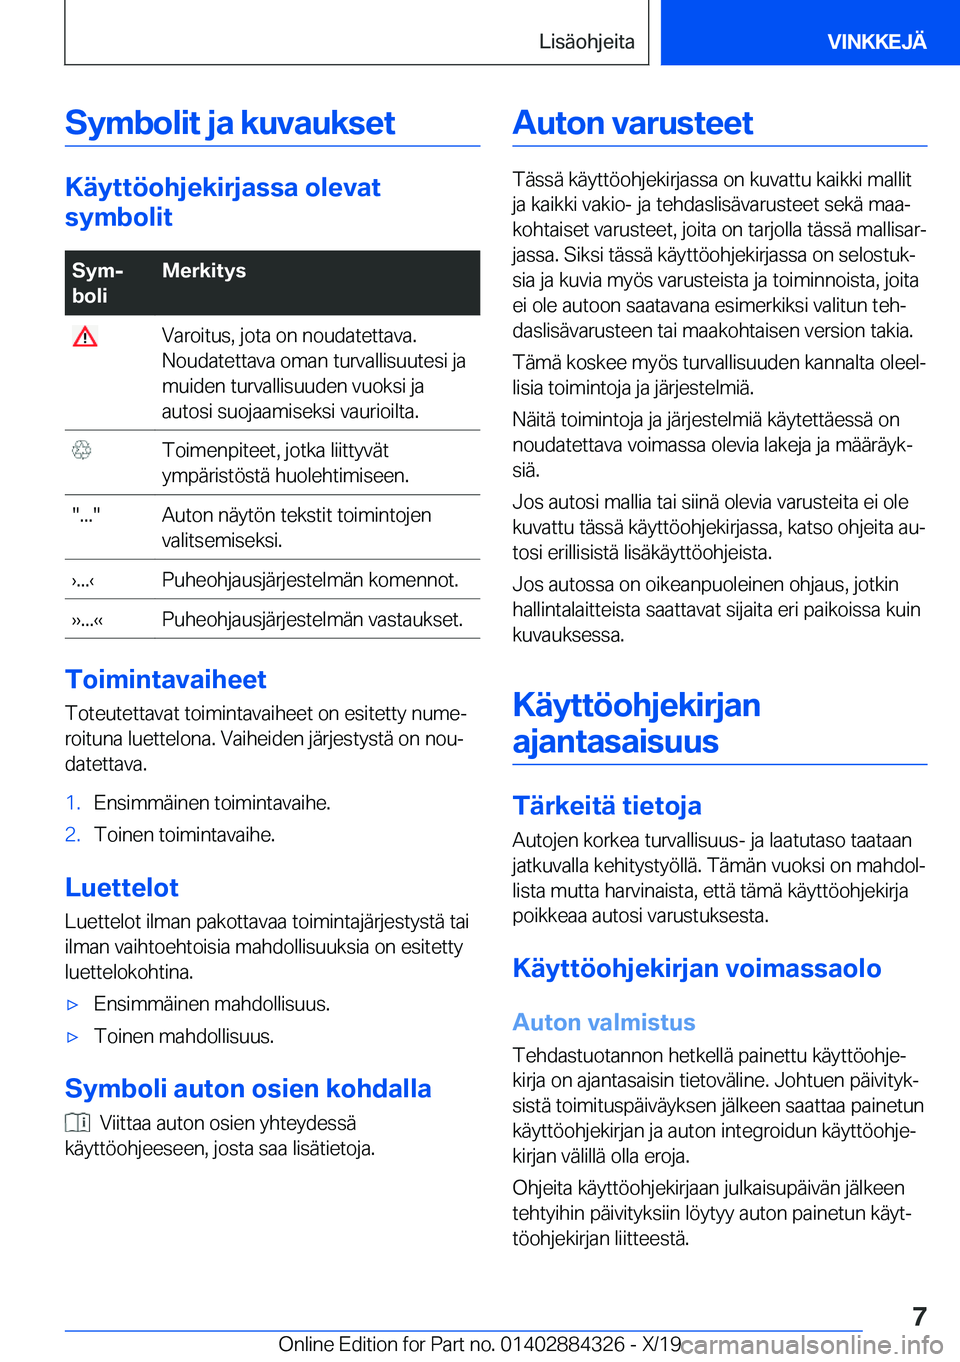 BMW 8 SERIES GRAN COUPE 2020  Omistajan Käsikirja (in Finnish) �S�y�m�b�o�l�i�t��j�a��k�u�v�a�u�k�s�e�t
�K�